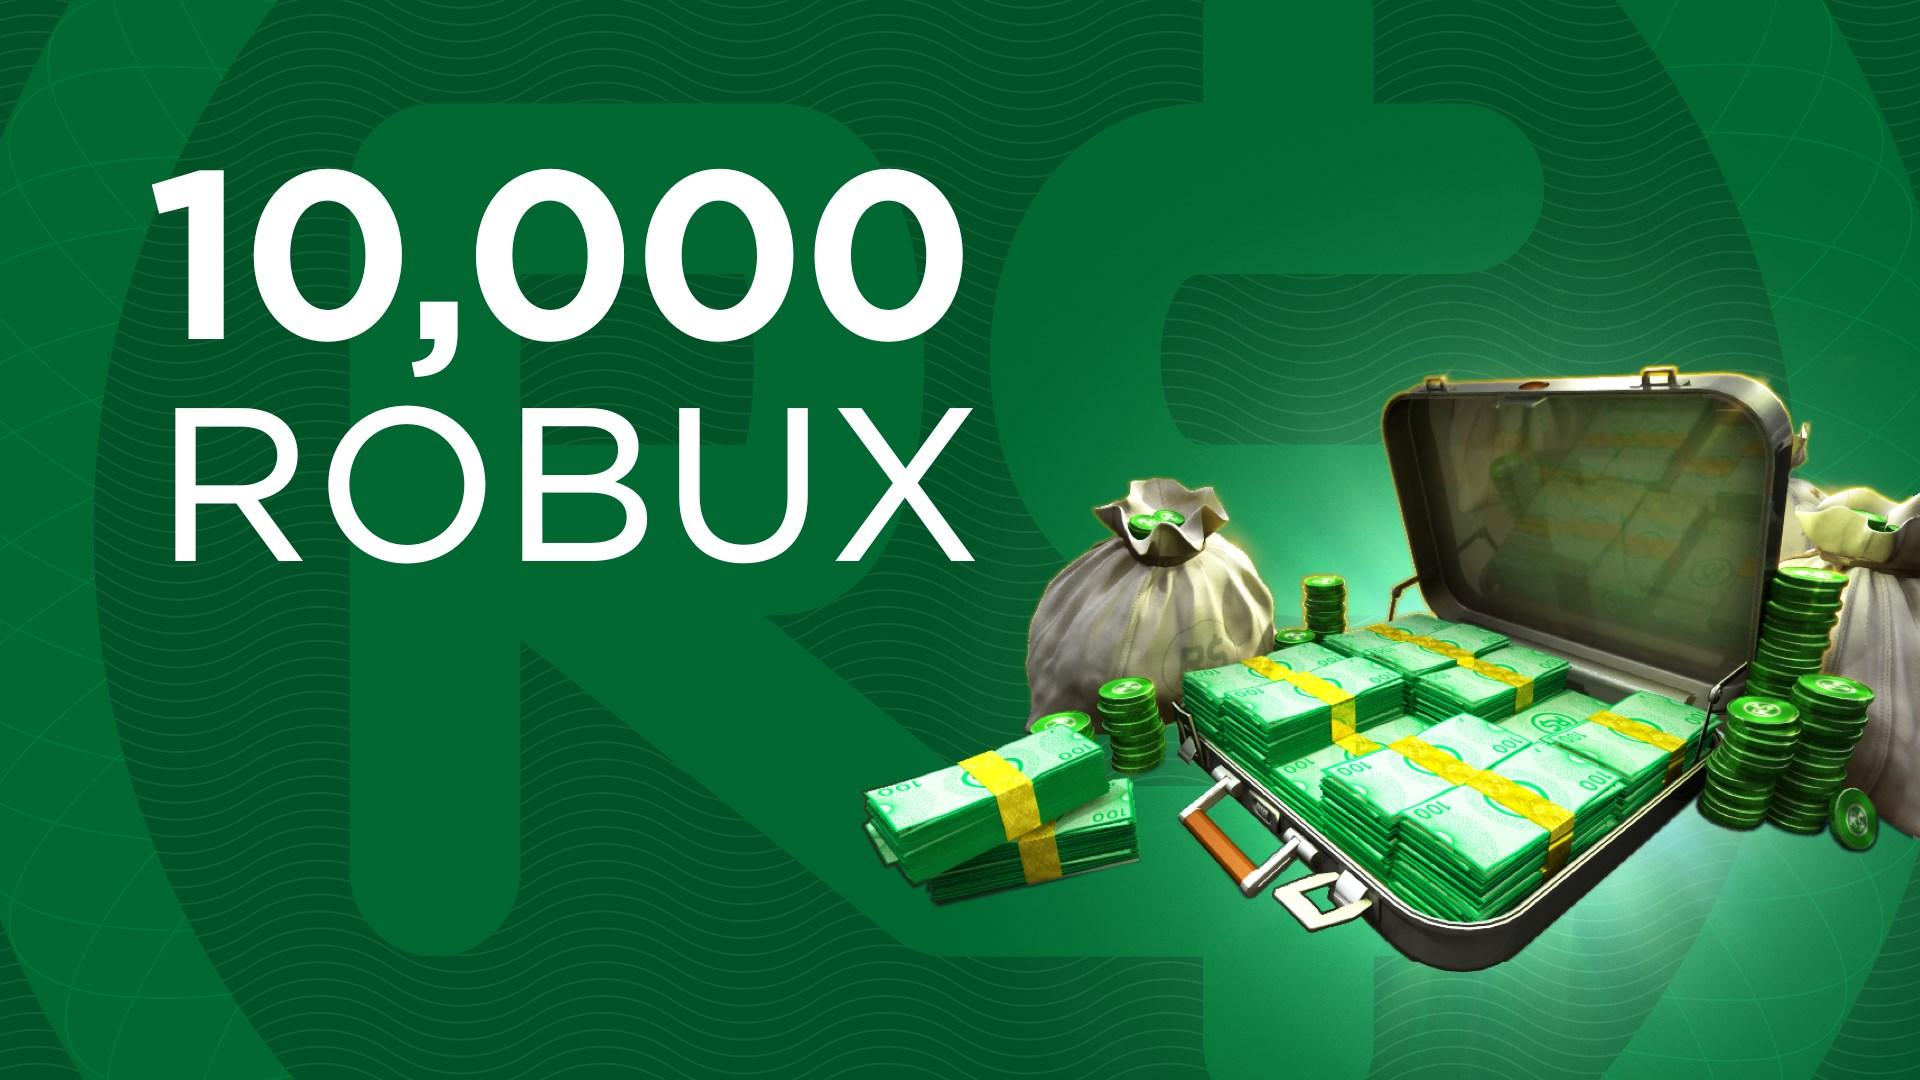 Jon (Arcwise) on X: Giving away 10,000 robux across 2 giveaways